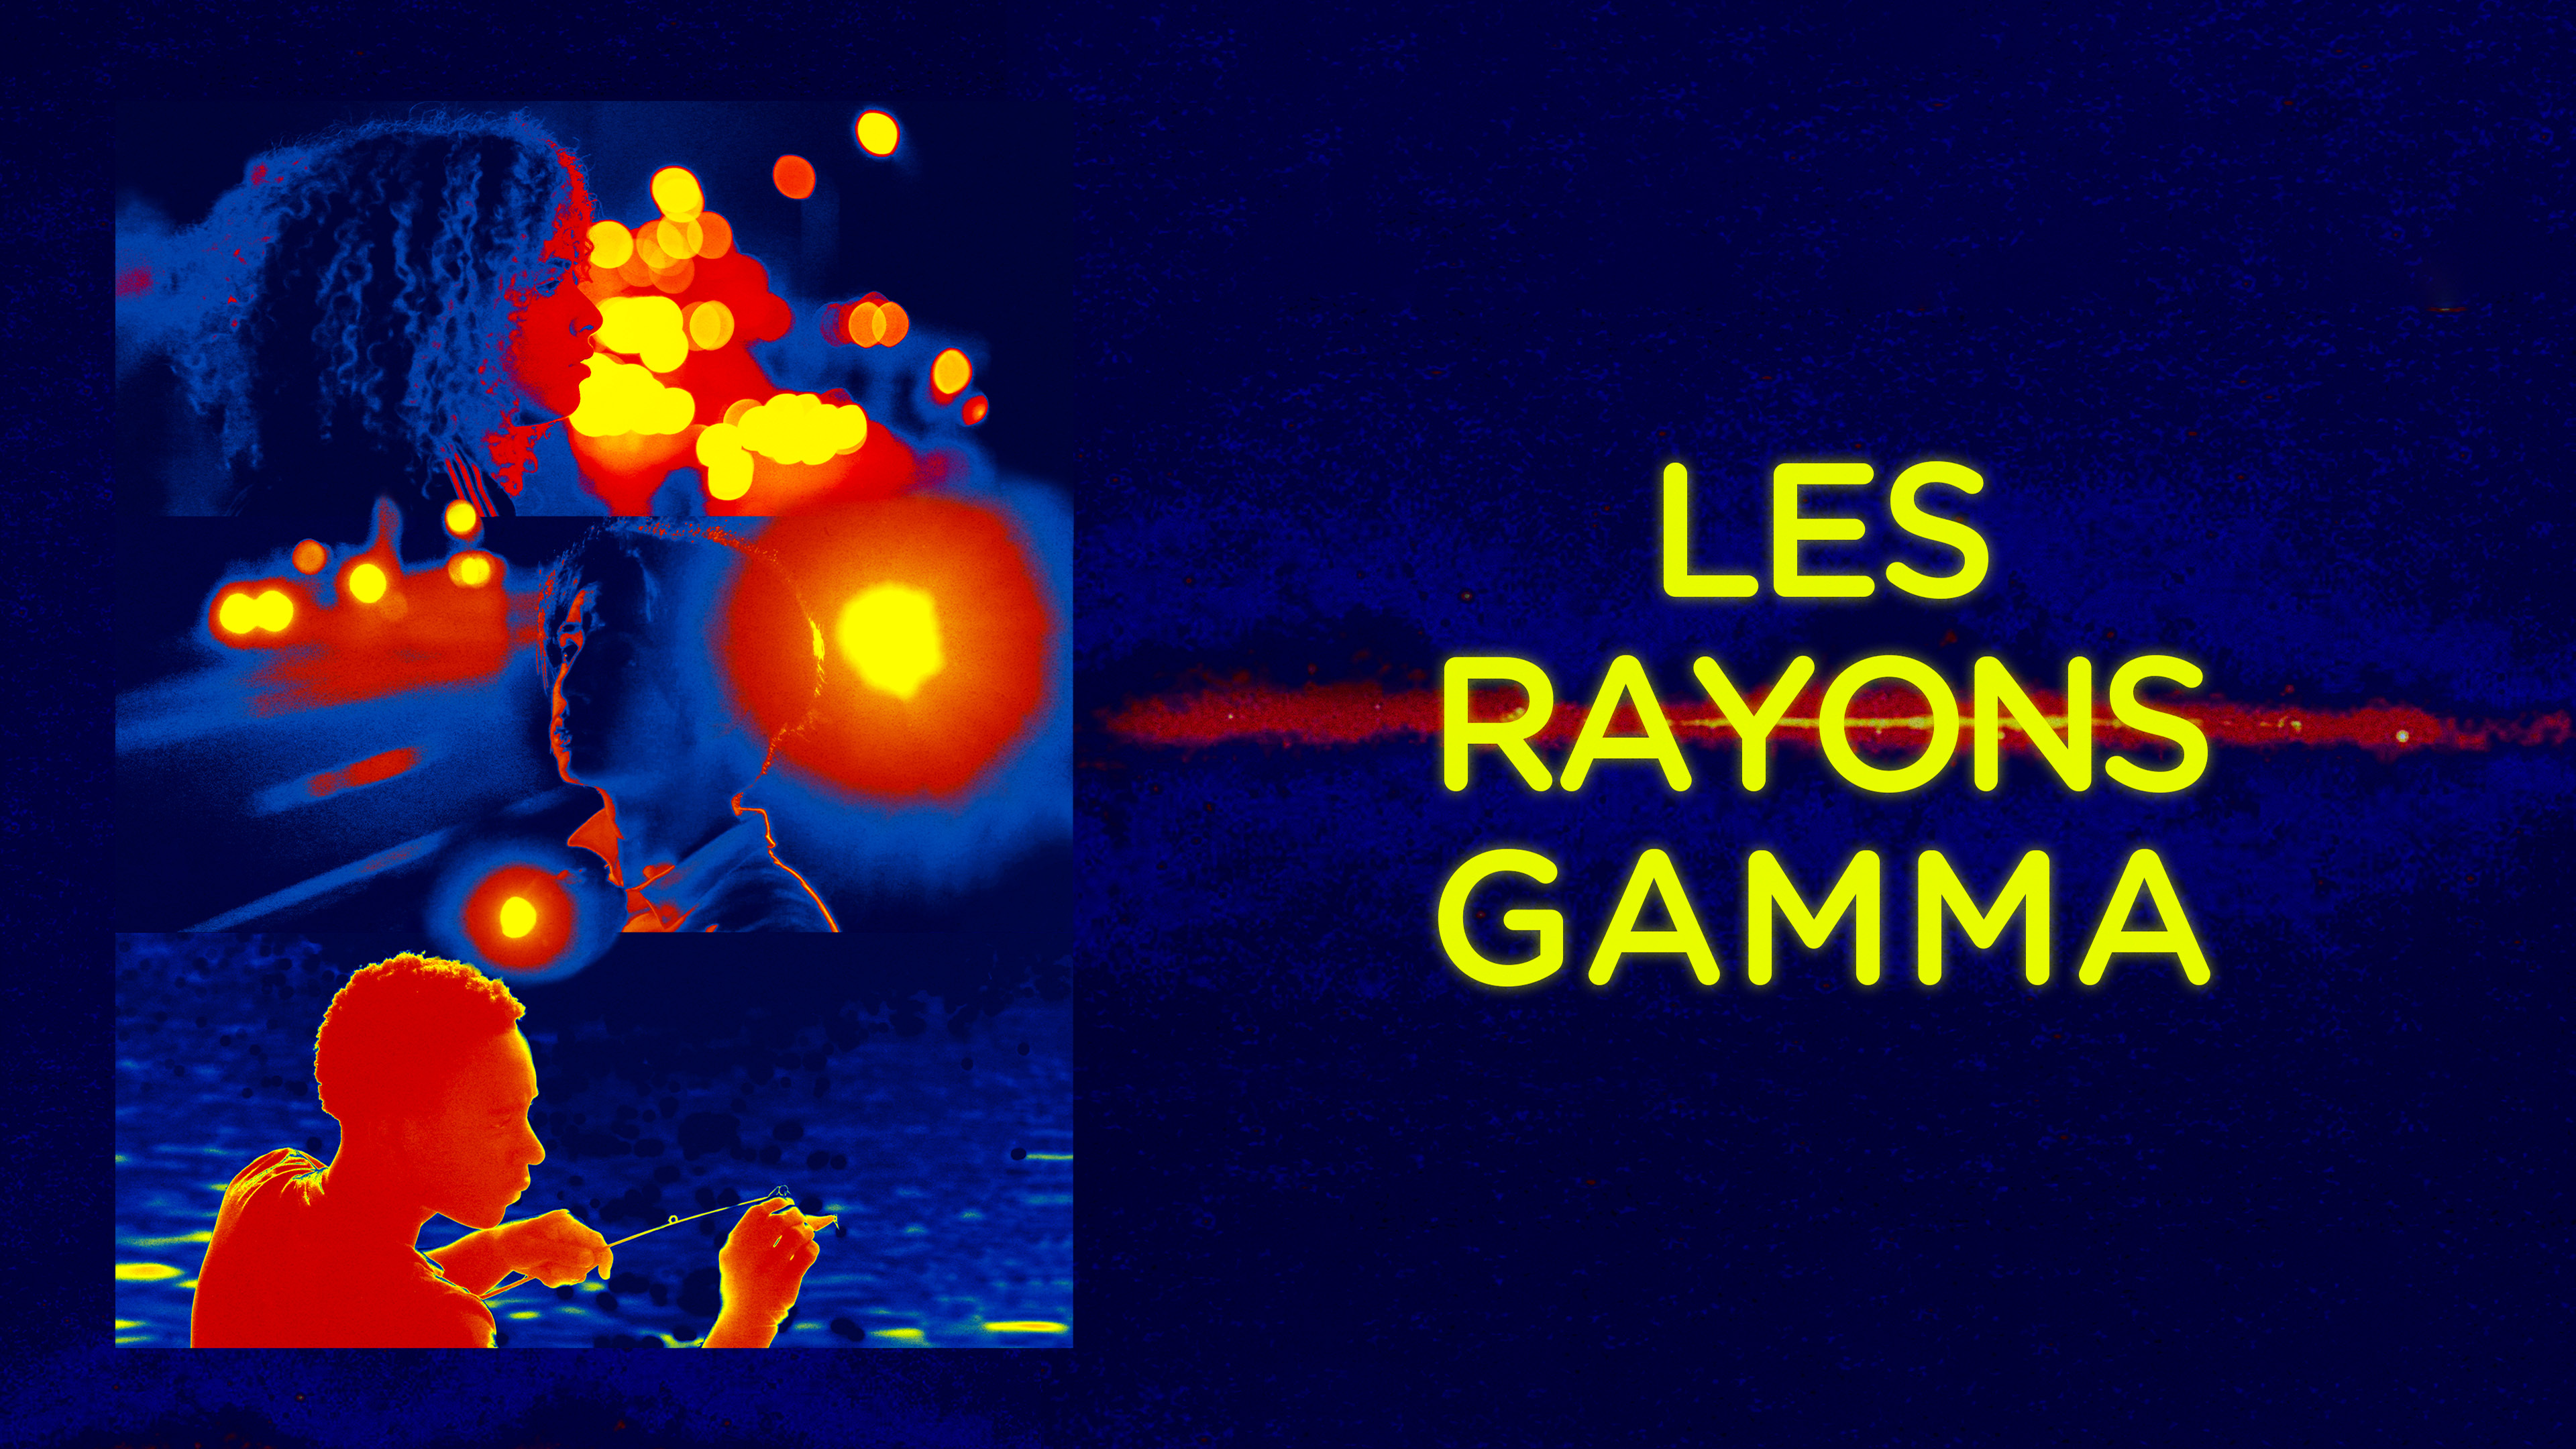 Les rayons gamma